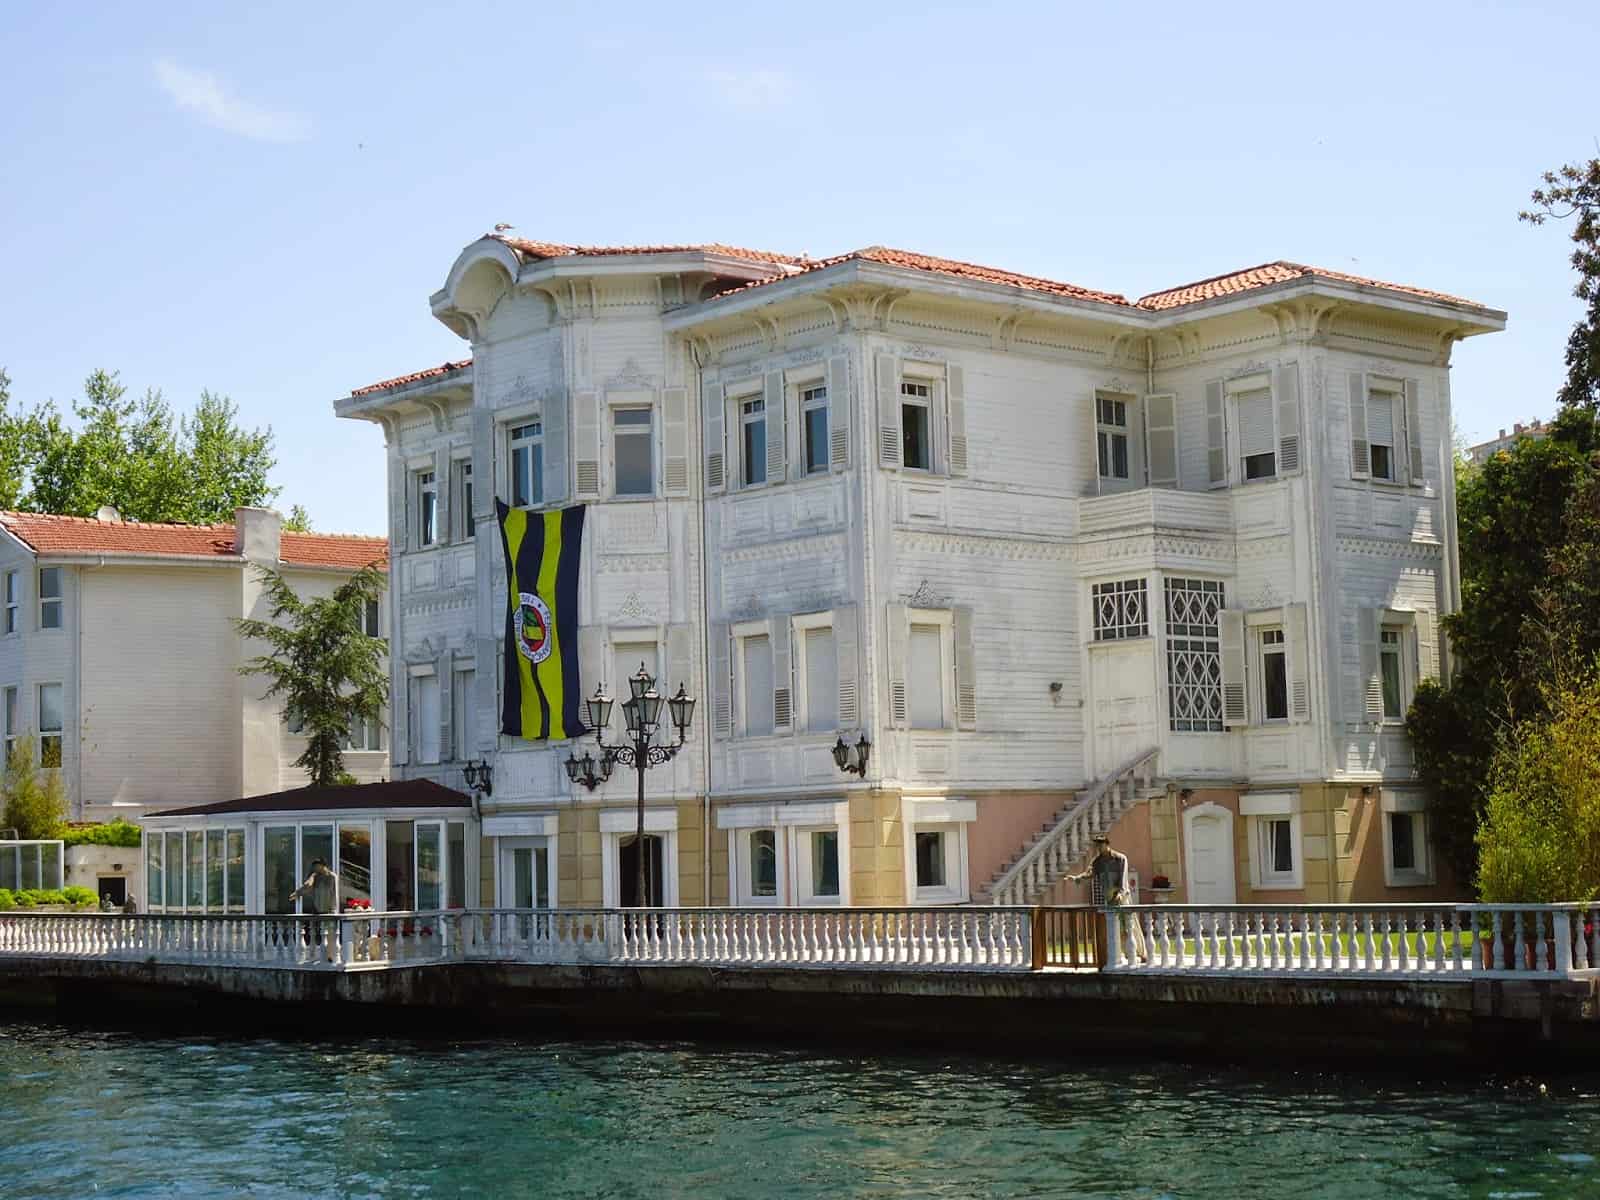 Yağcı Şefik Bey Mansion in Kanlıca, Istanbul, Turkey